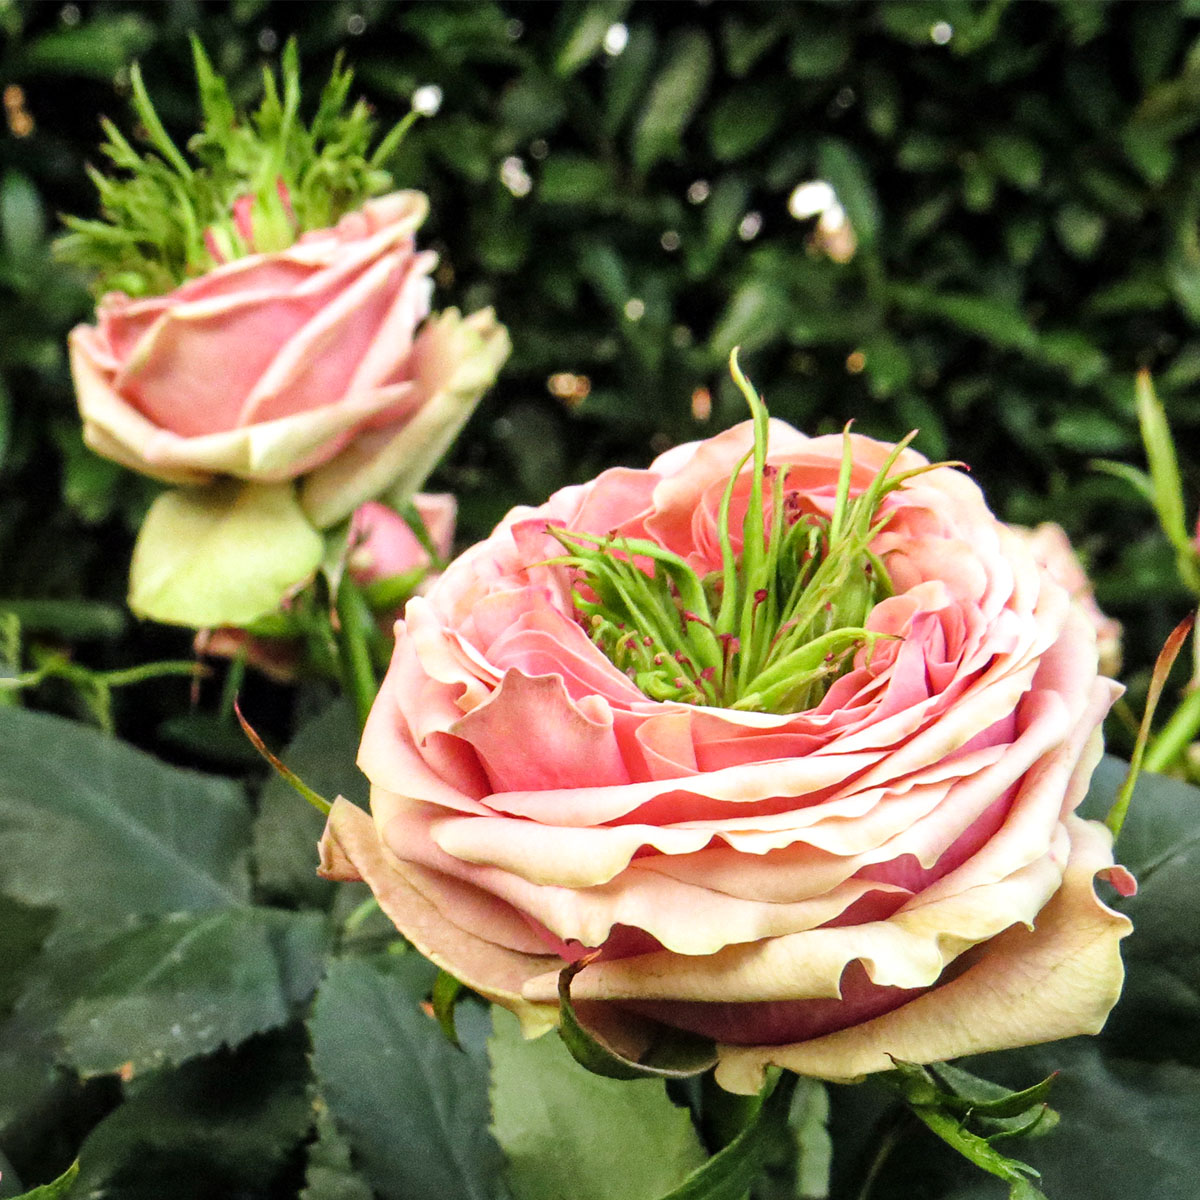 Wouter Jongkind 5 Biggest Evolutions - Garden Rose1